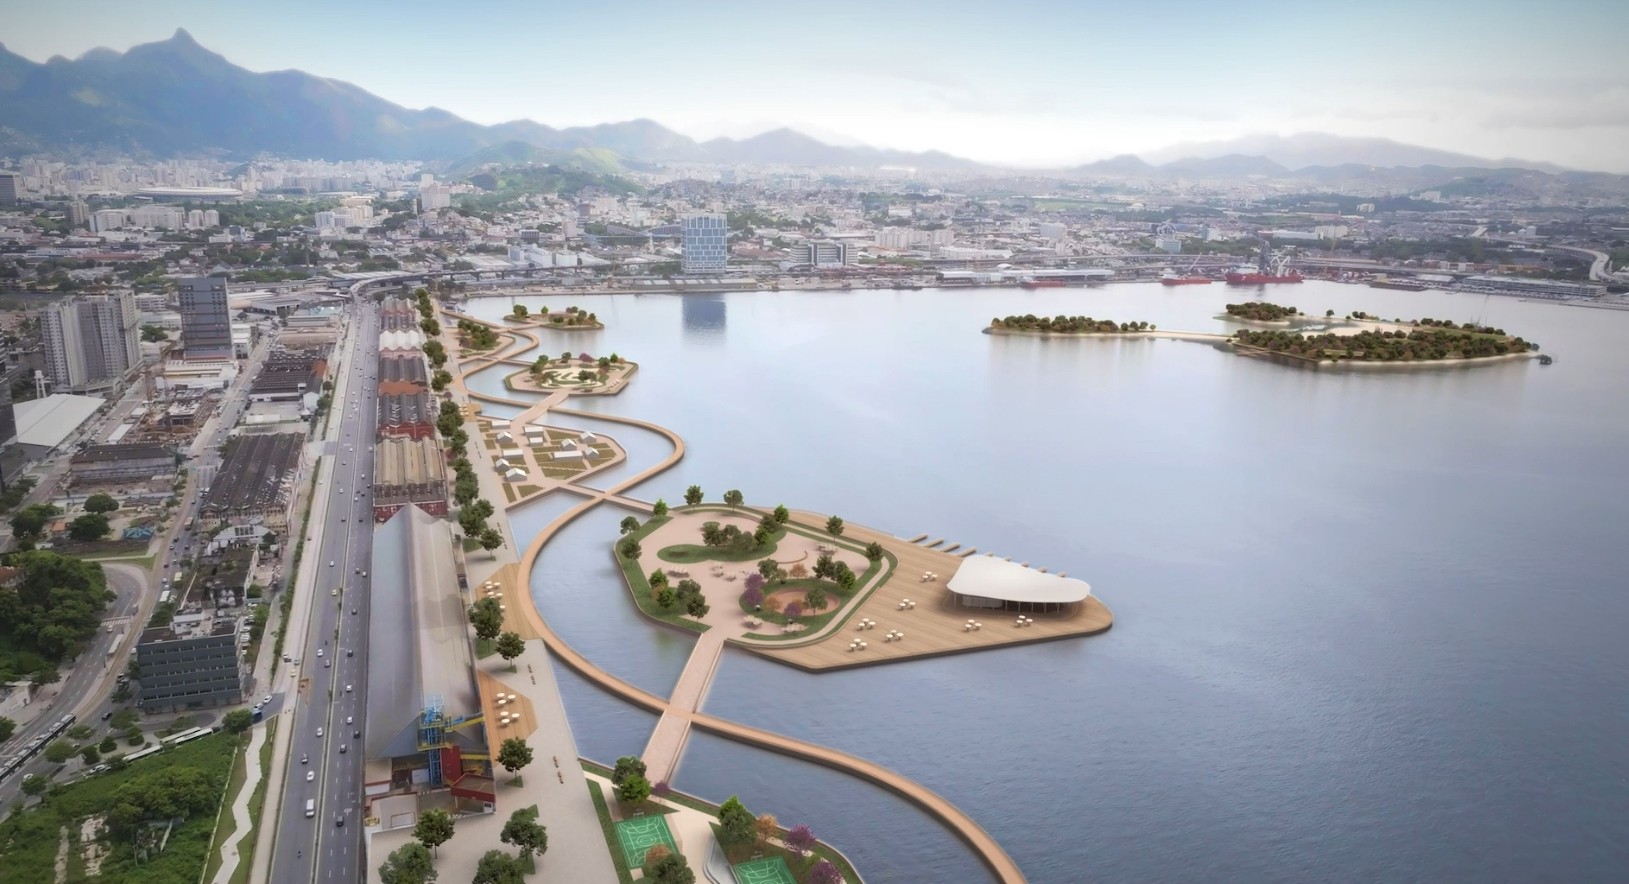 Rio negocia construção do Parque do Porto, nova área de lazer na Zona Portuária com ilhas artificiais na Baía de Guanabara